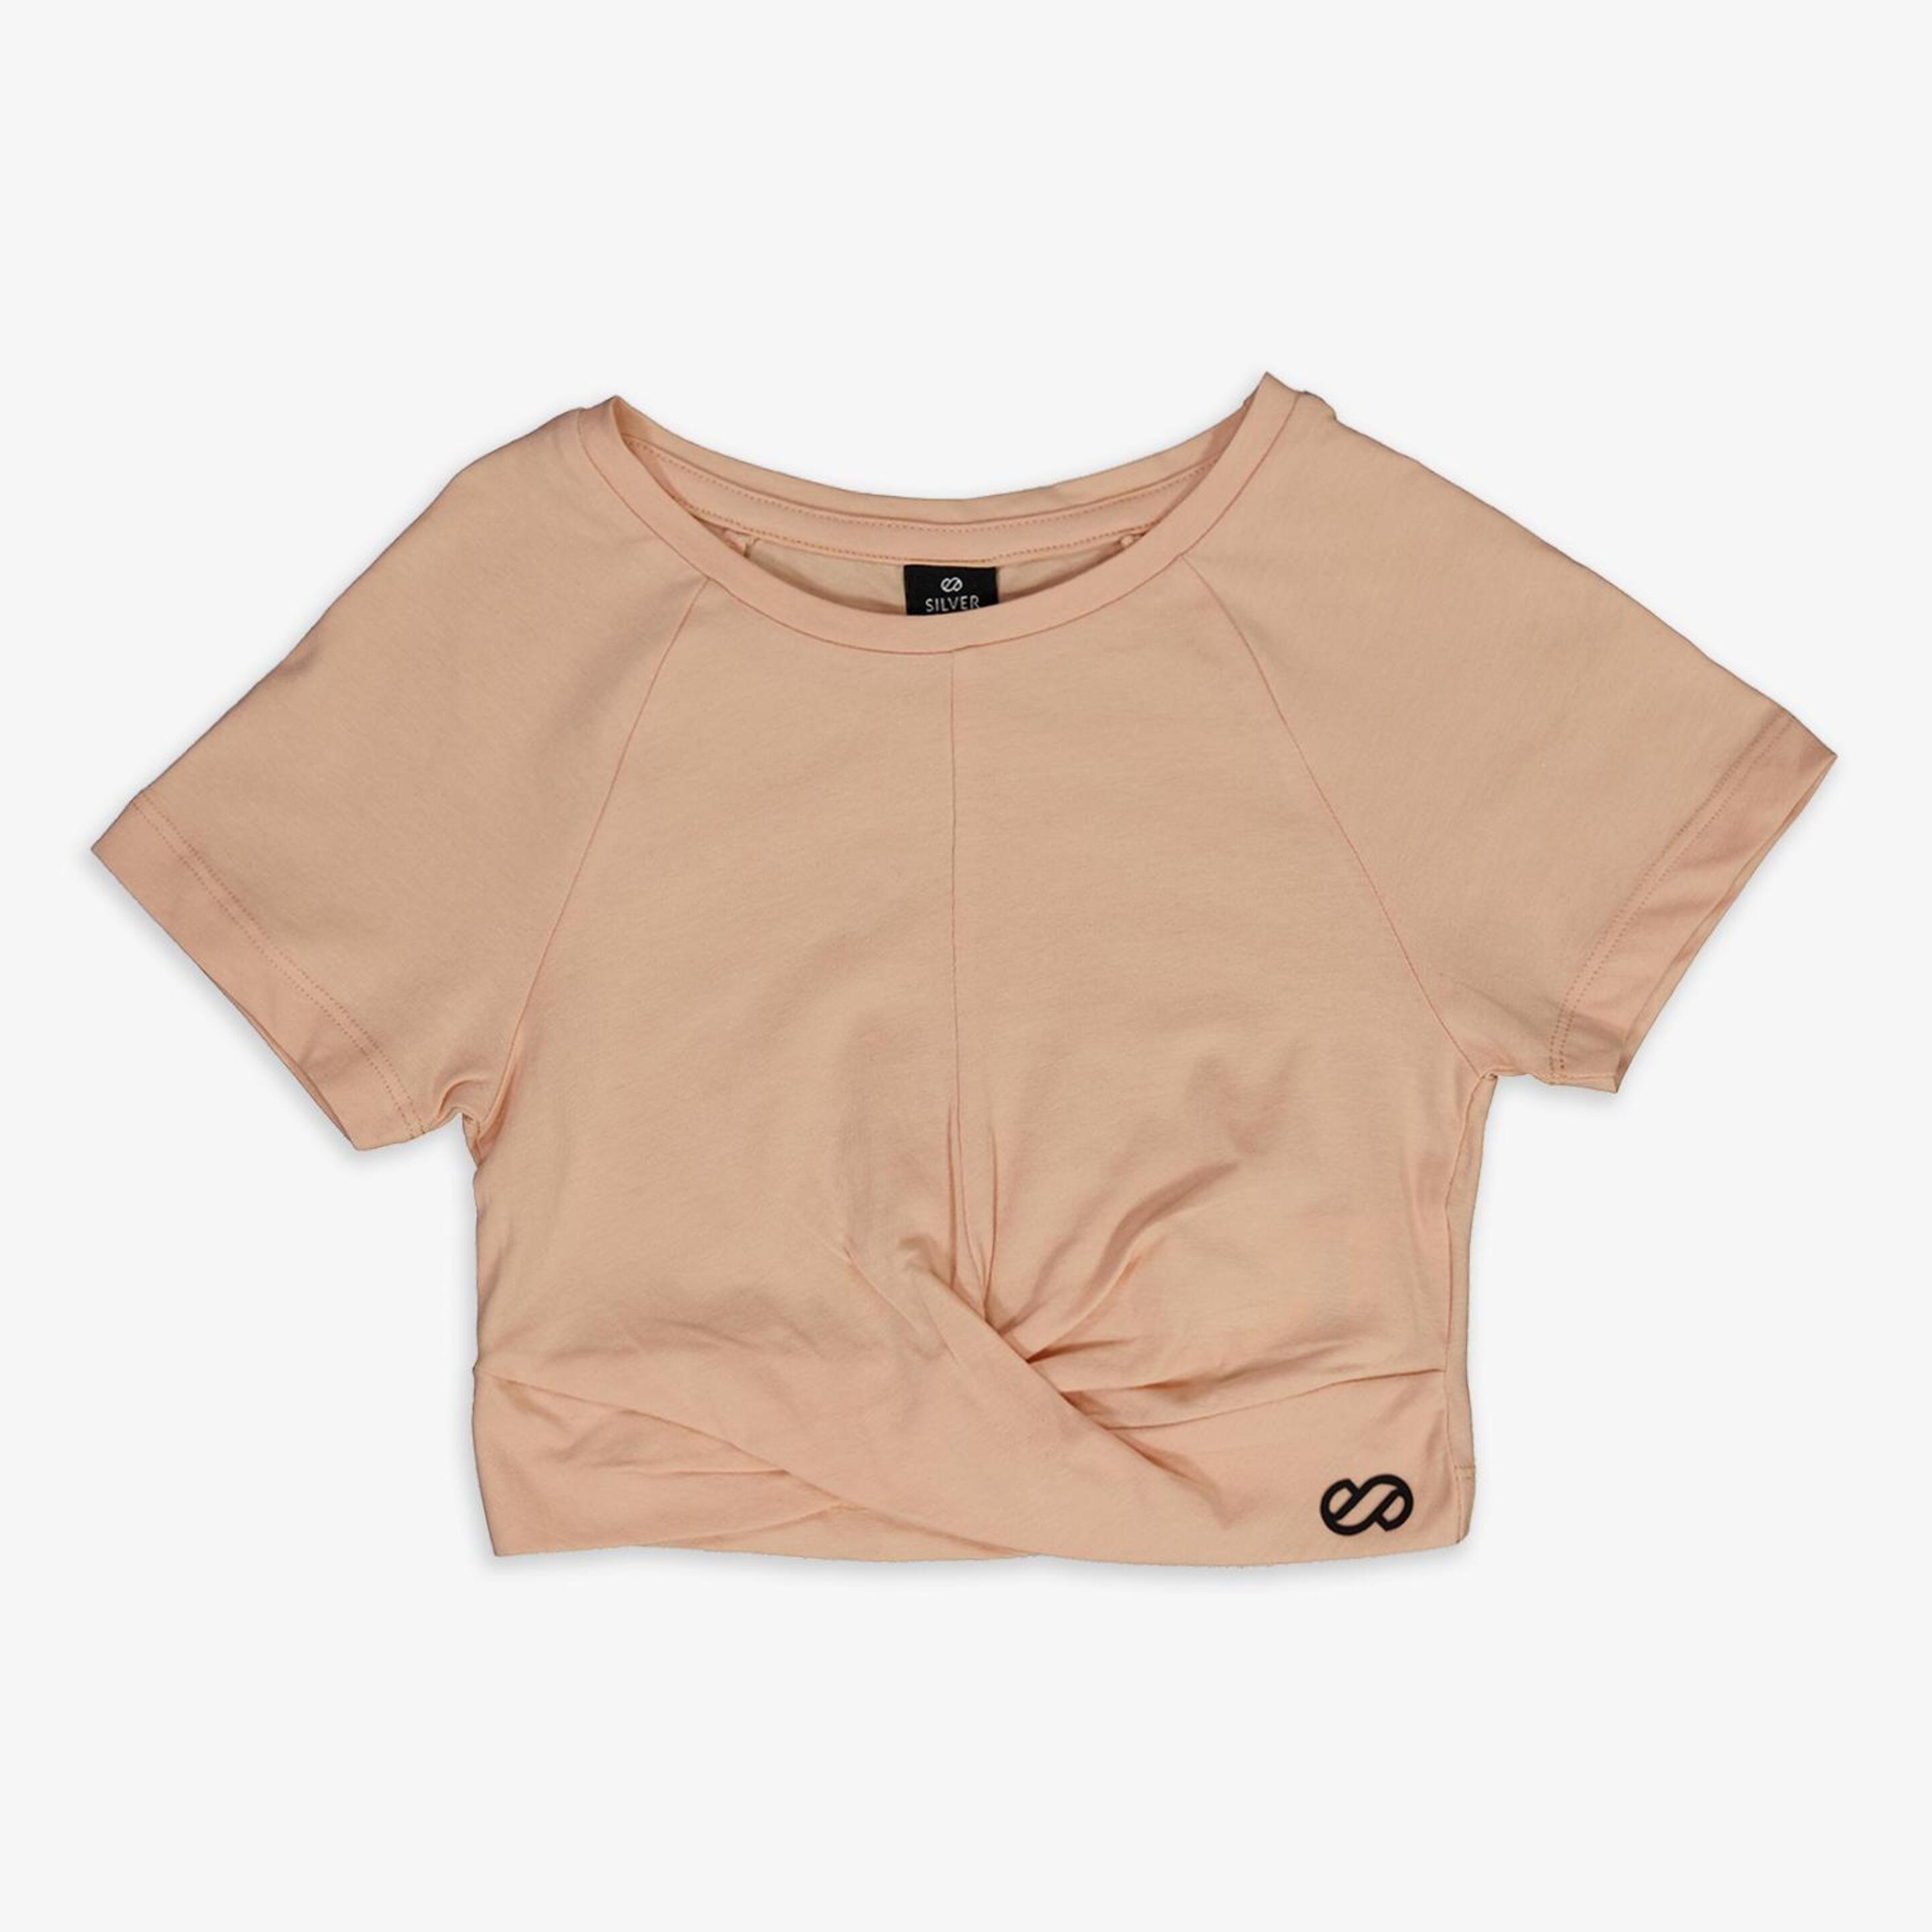 Camiseta Silver - Coral - Camiseta Niña